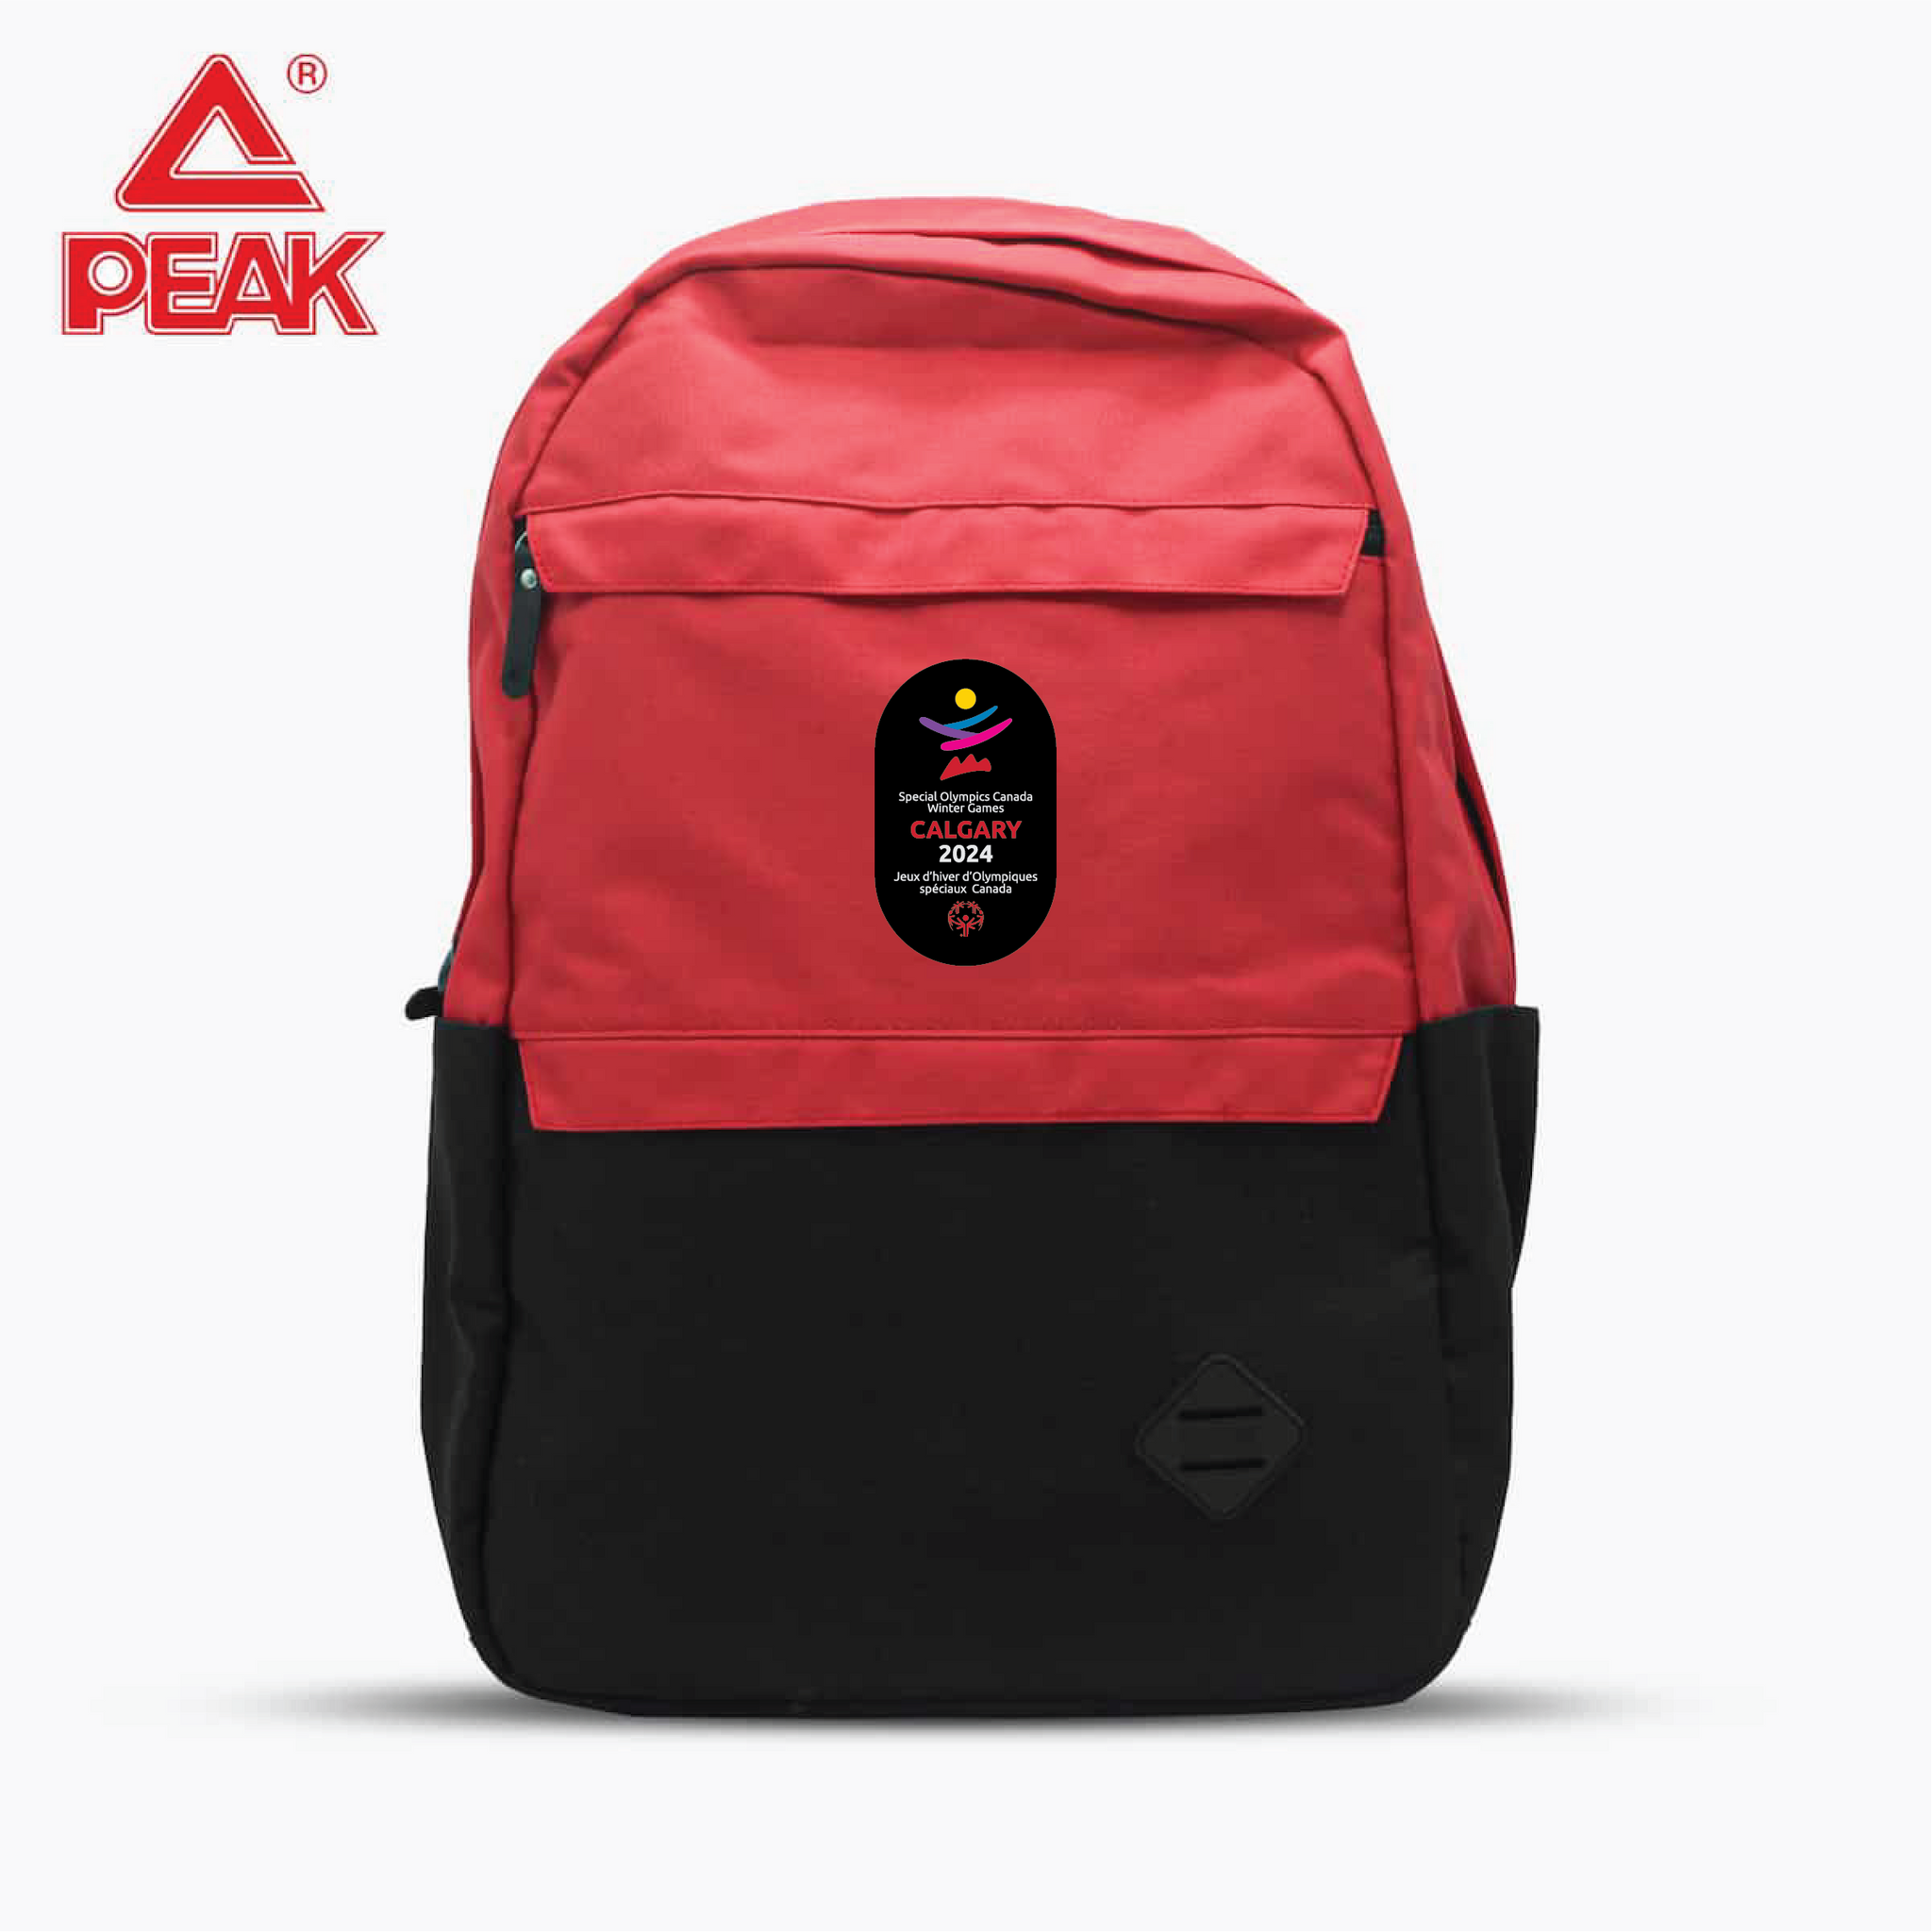 SOCWG Peak Backpack